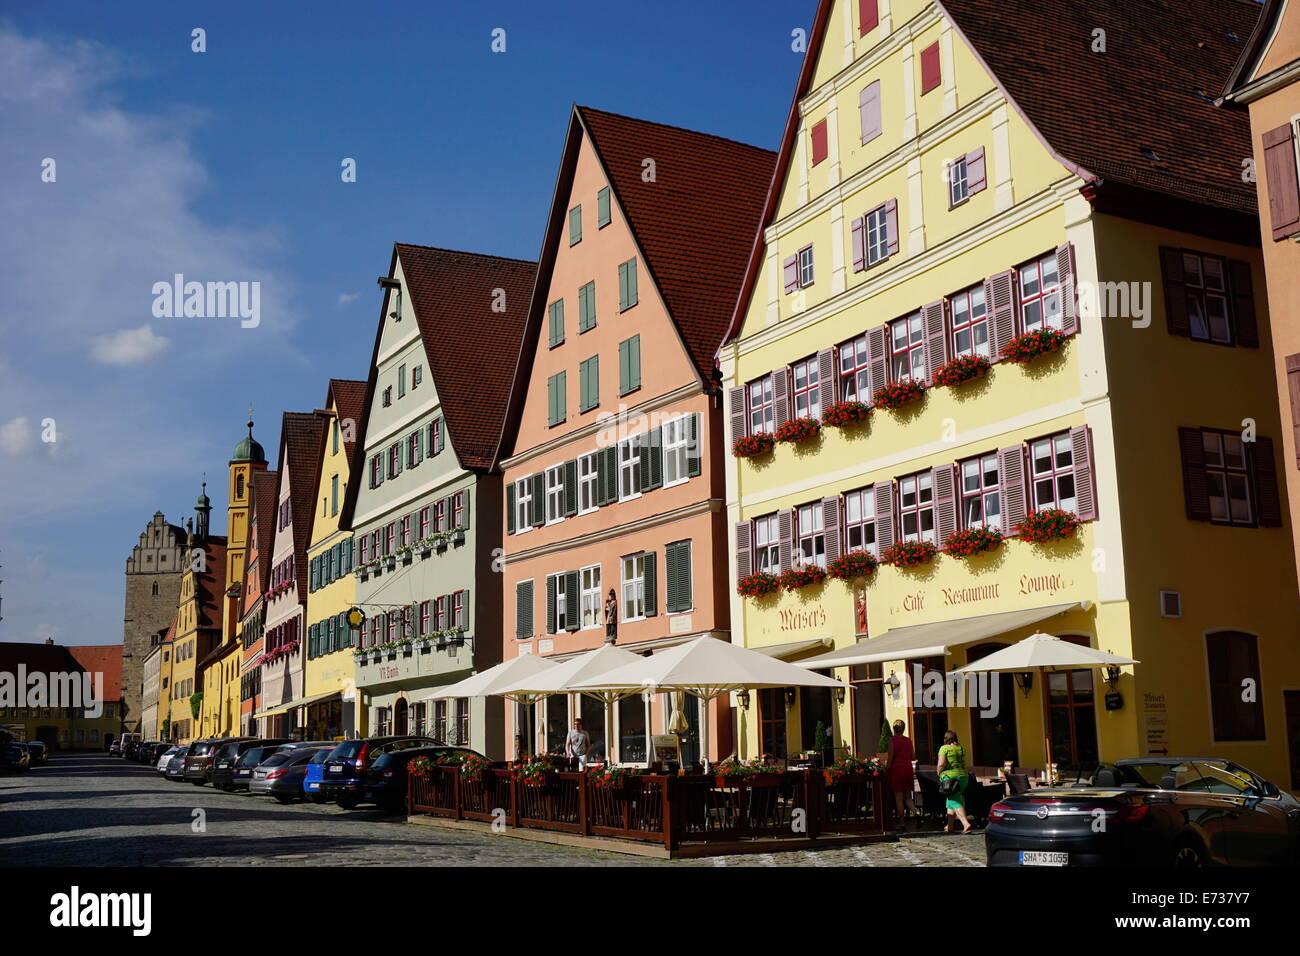 Maisons colorées dans la région connue sous le nom de Weinmarkt, Dinkelsbuhl, Route Romantique, Franconia, Bavaria, Germany, Europe Banque D'Images